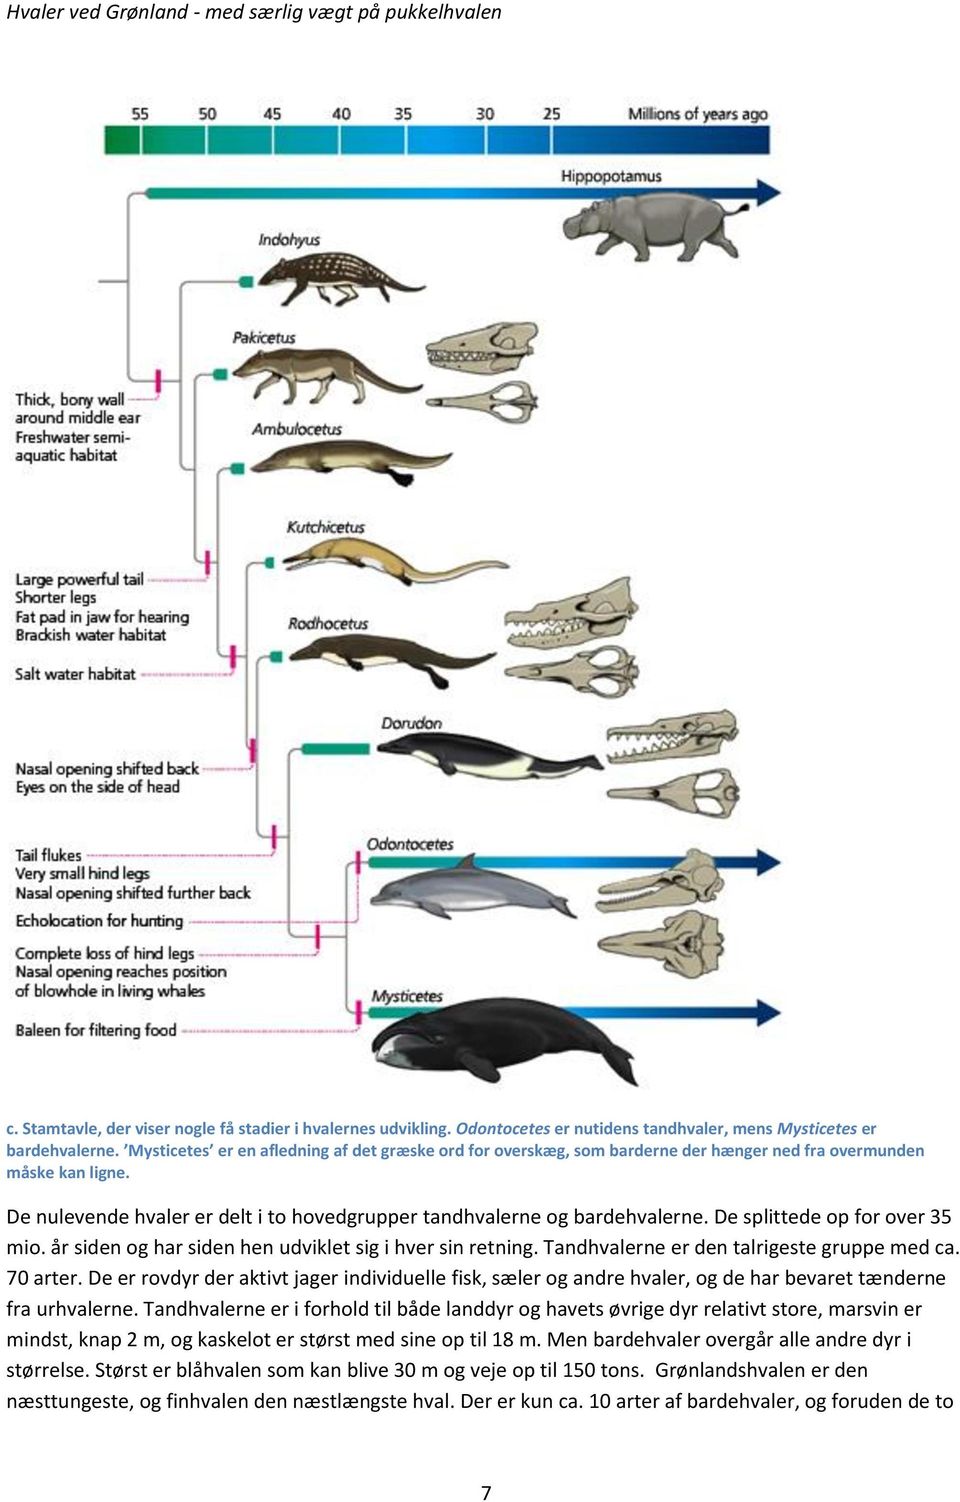 De splittede op for over 35 mio. år siden og har siden hen udviklet sig i hver sin retning. Tandhvalerne er den talrigeste gruppe med ca. 70 arter.